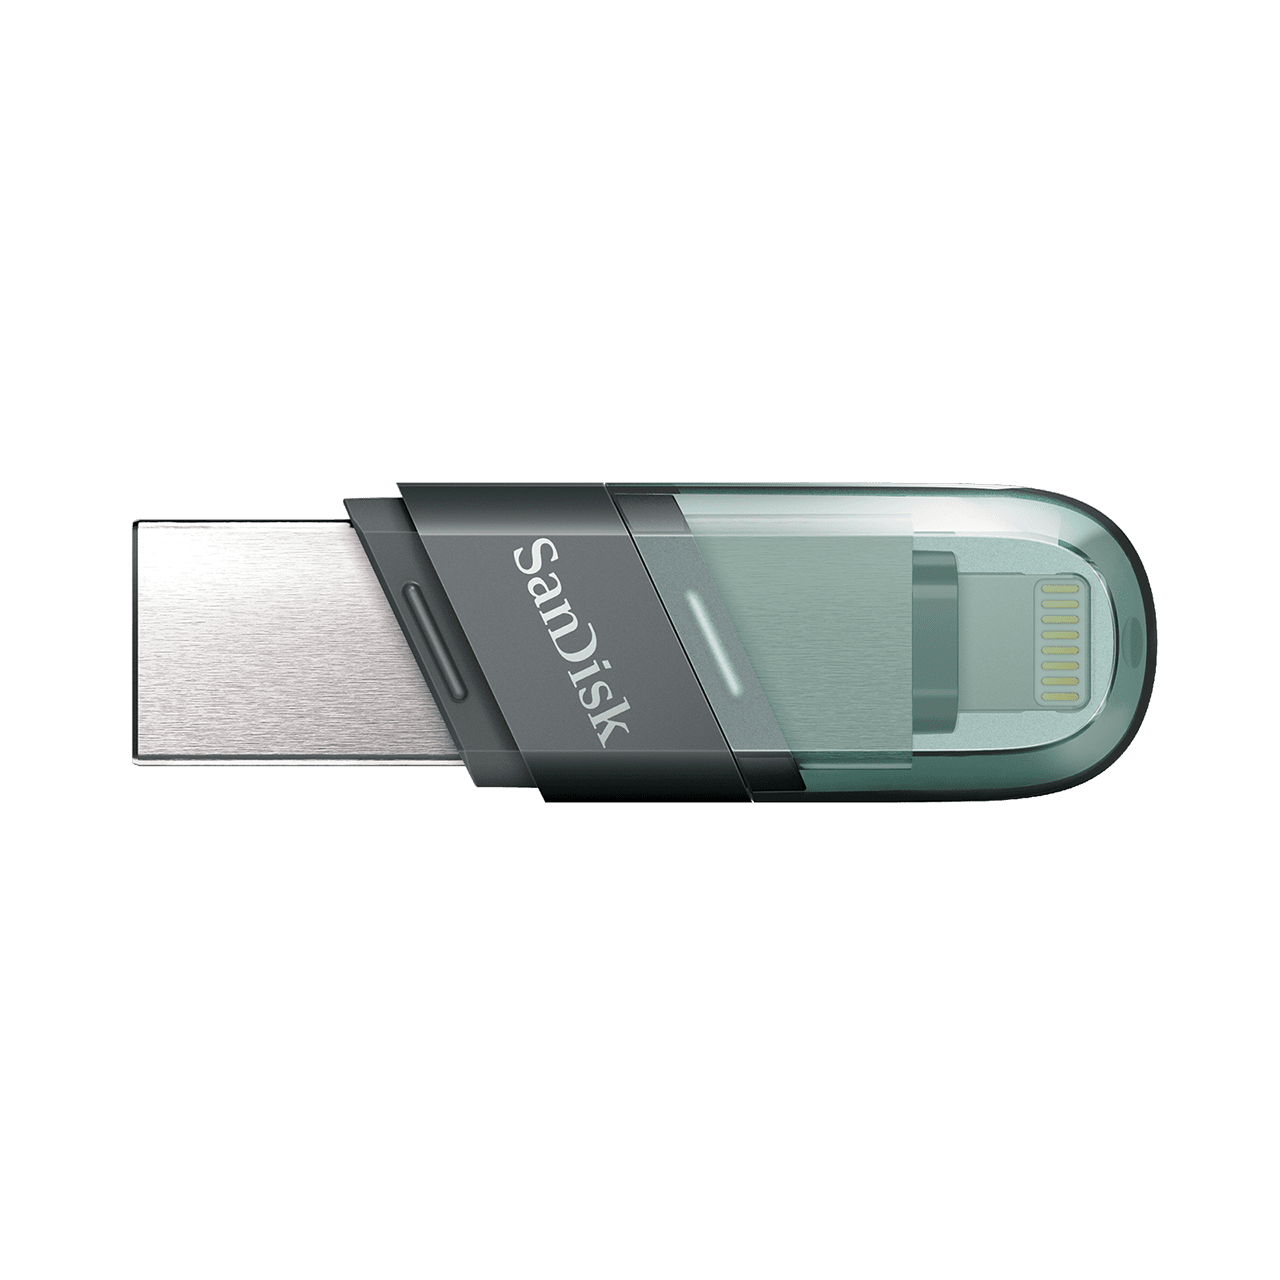 256GB SanDisk iXpand Flash Drive Flip minnessticka